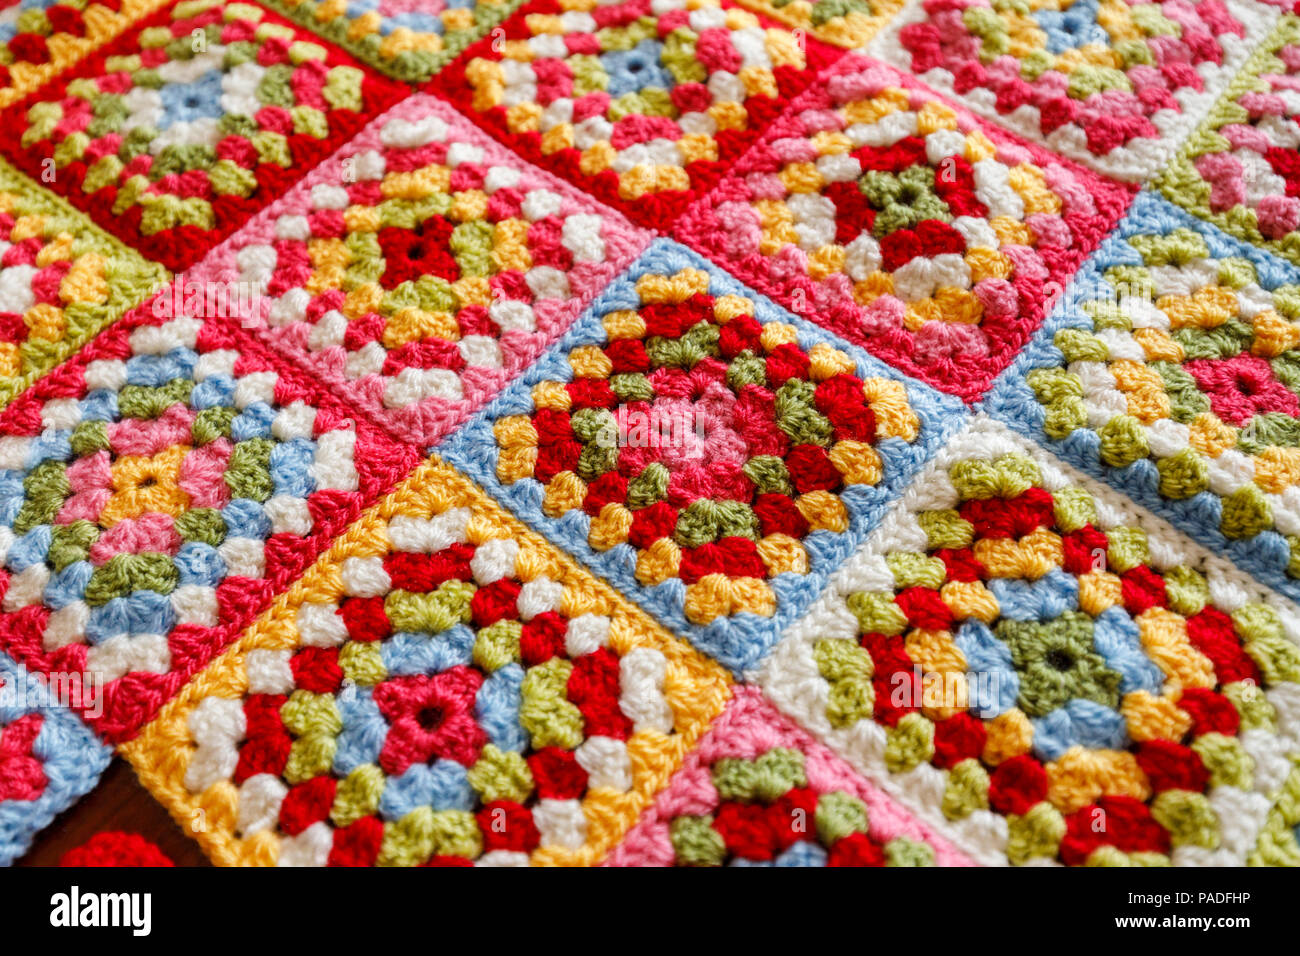 Granny Square De Couleur Vive Couverture Bebe Laine Fait Main Crochet Traditionnel De L Artisanat Accueil Photo Stock Alamy